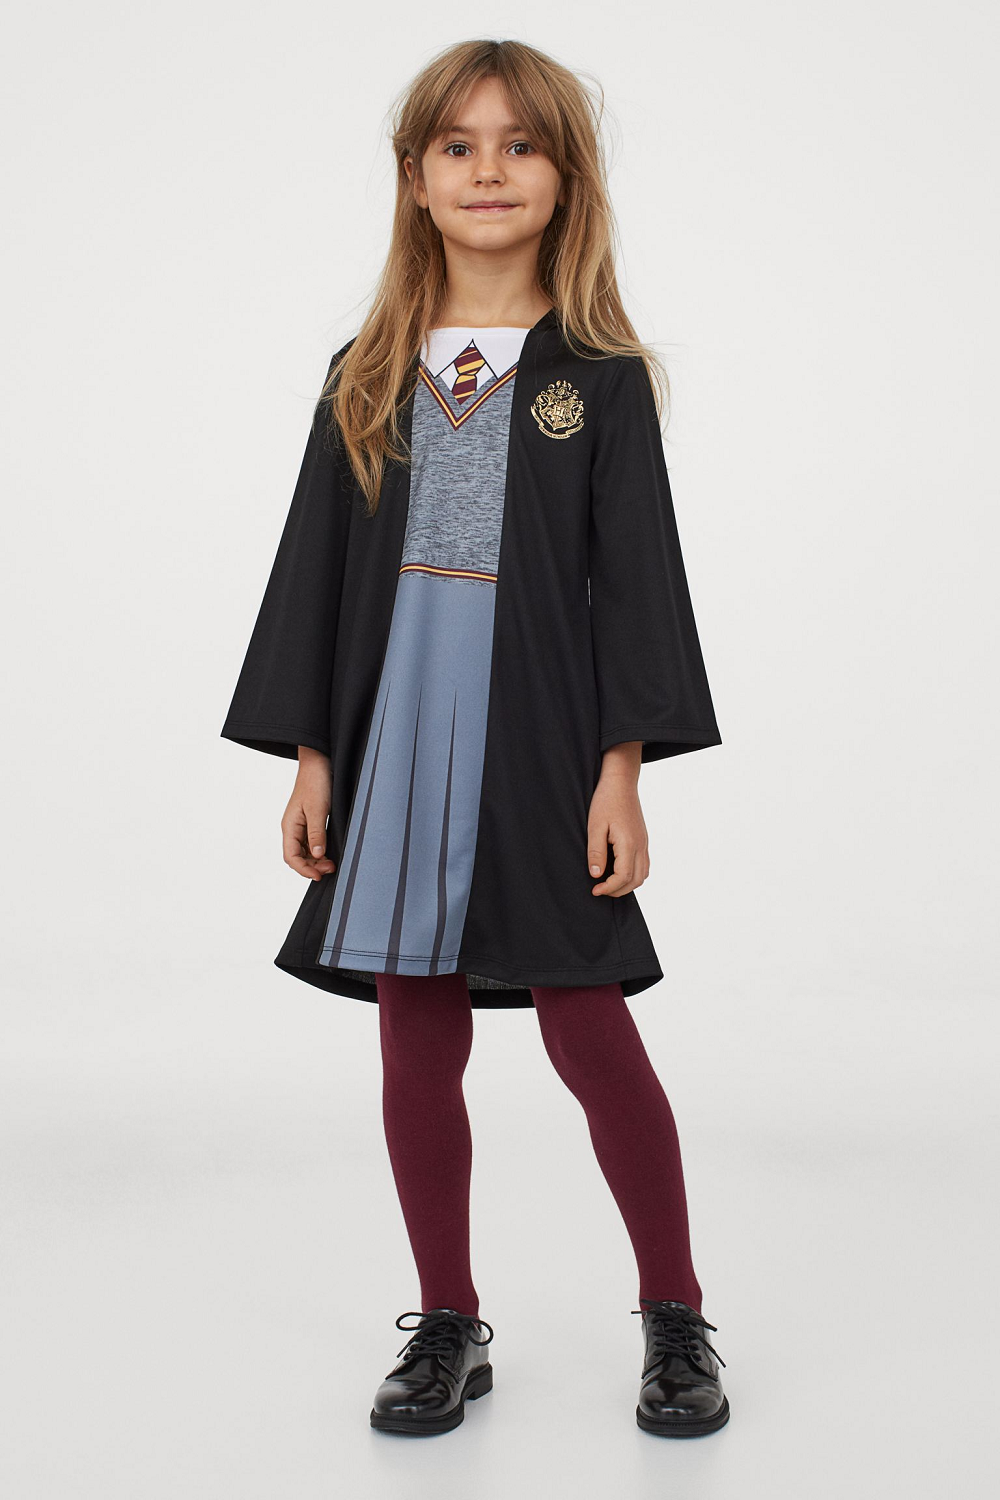 H&M Harry Potter kolekcija za djecu jesen/zima 2020./2021.